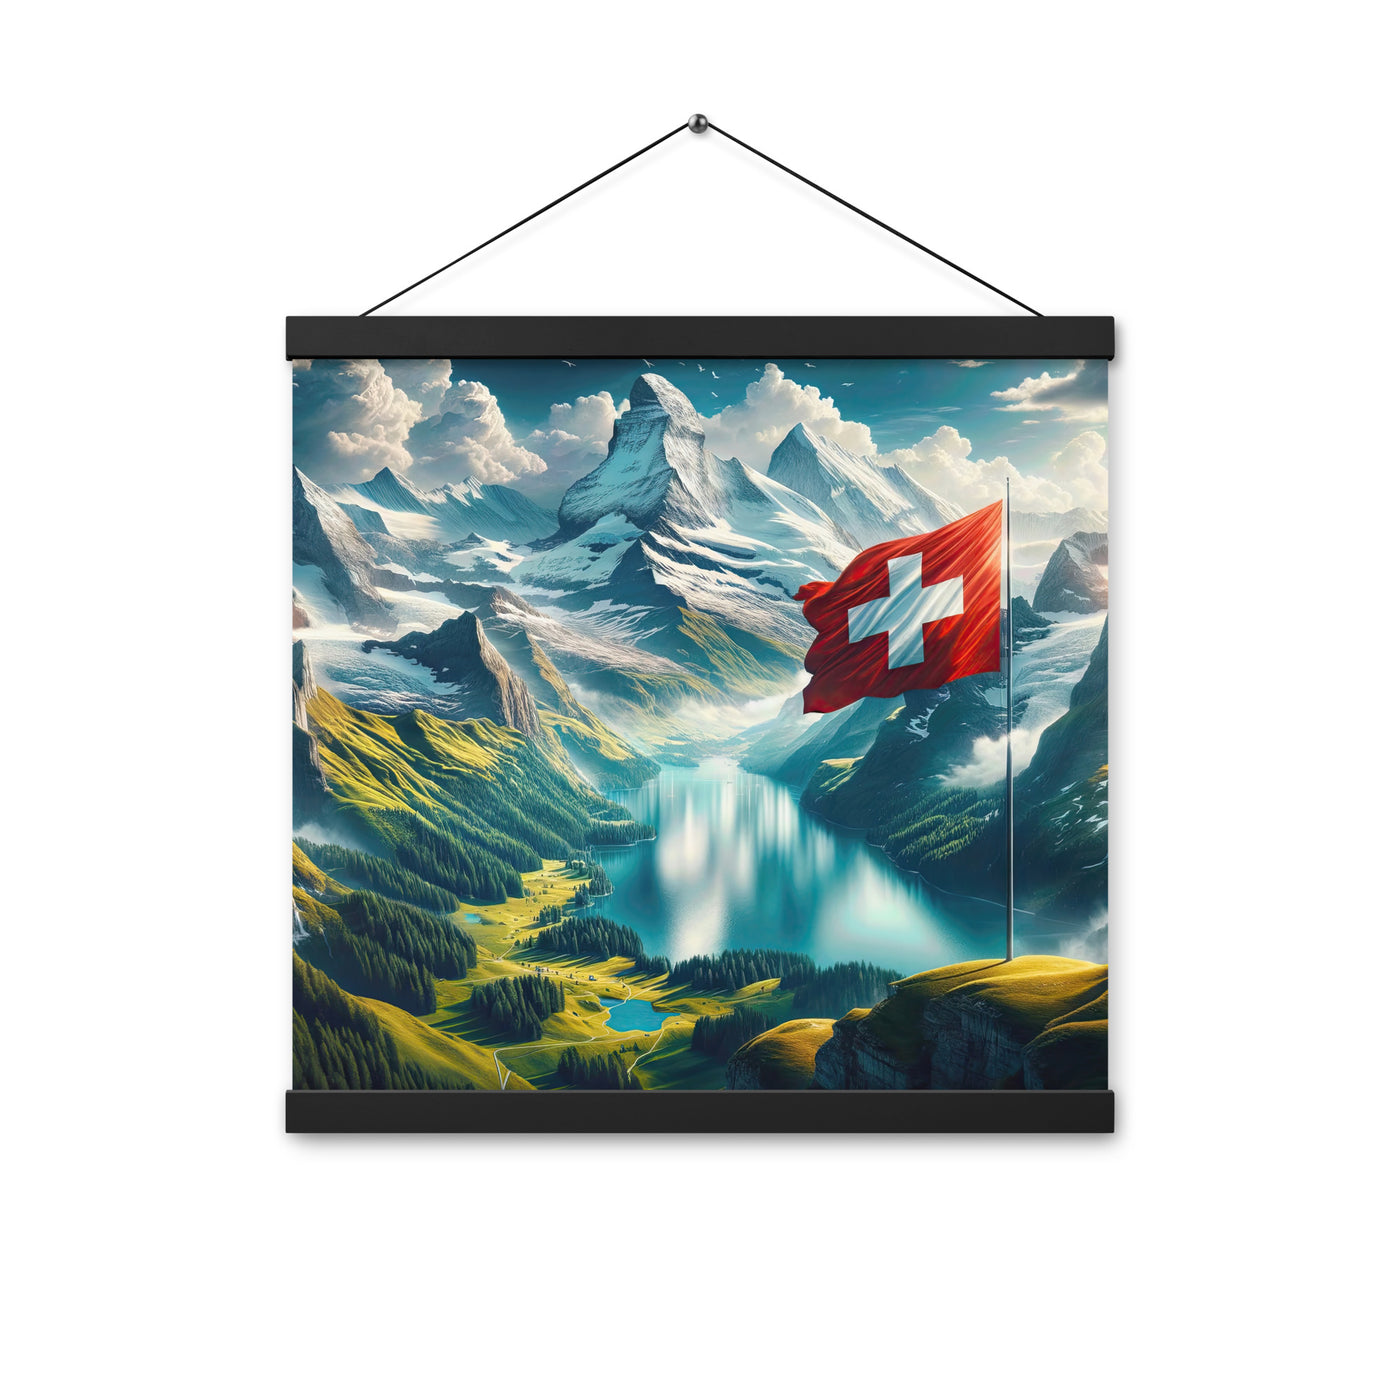 Ultraepische, fotorealistische Darstellung der Schweizer Alpenlandschaft mit Schweizer Flagge - Enhanced Matte Paper Poster With Hanger berge xxx yyy zzz 40.6 x 40.6 cm